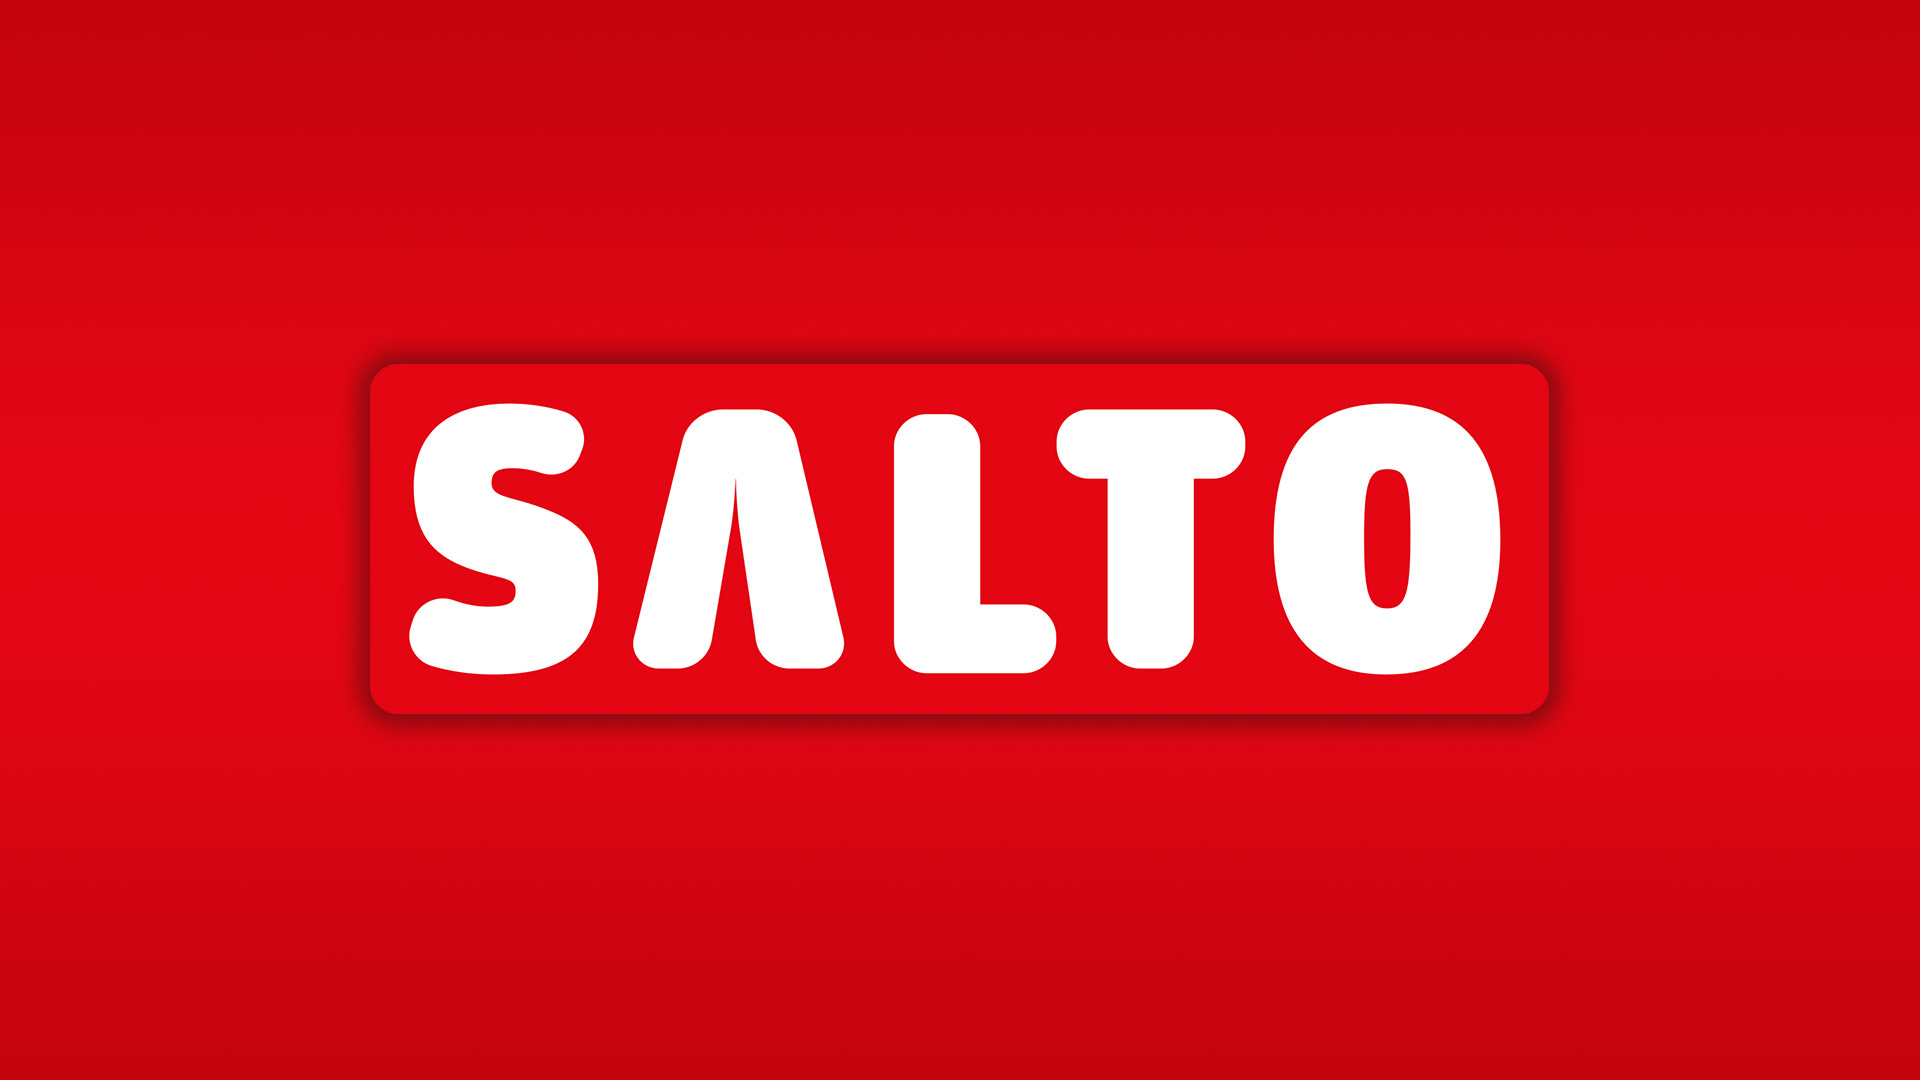 Salto1 TV